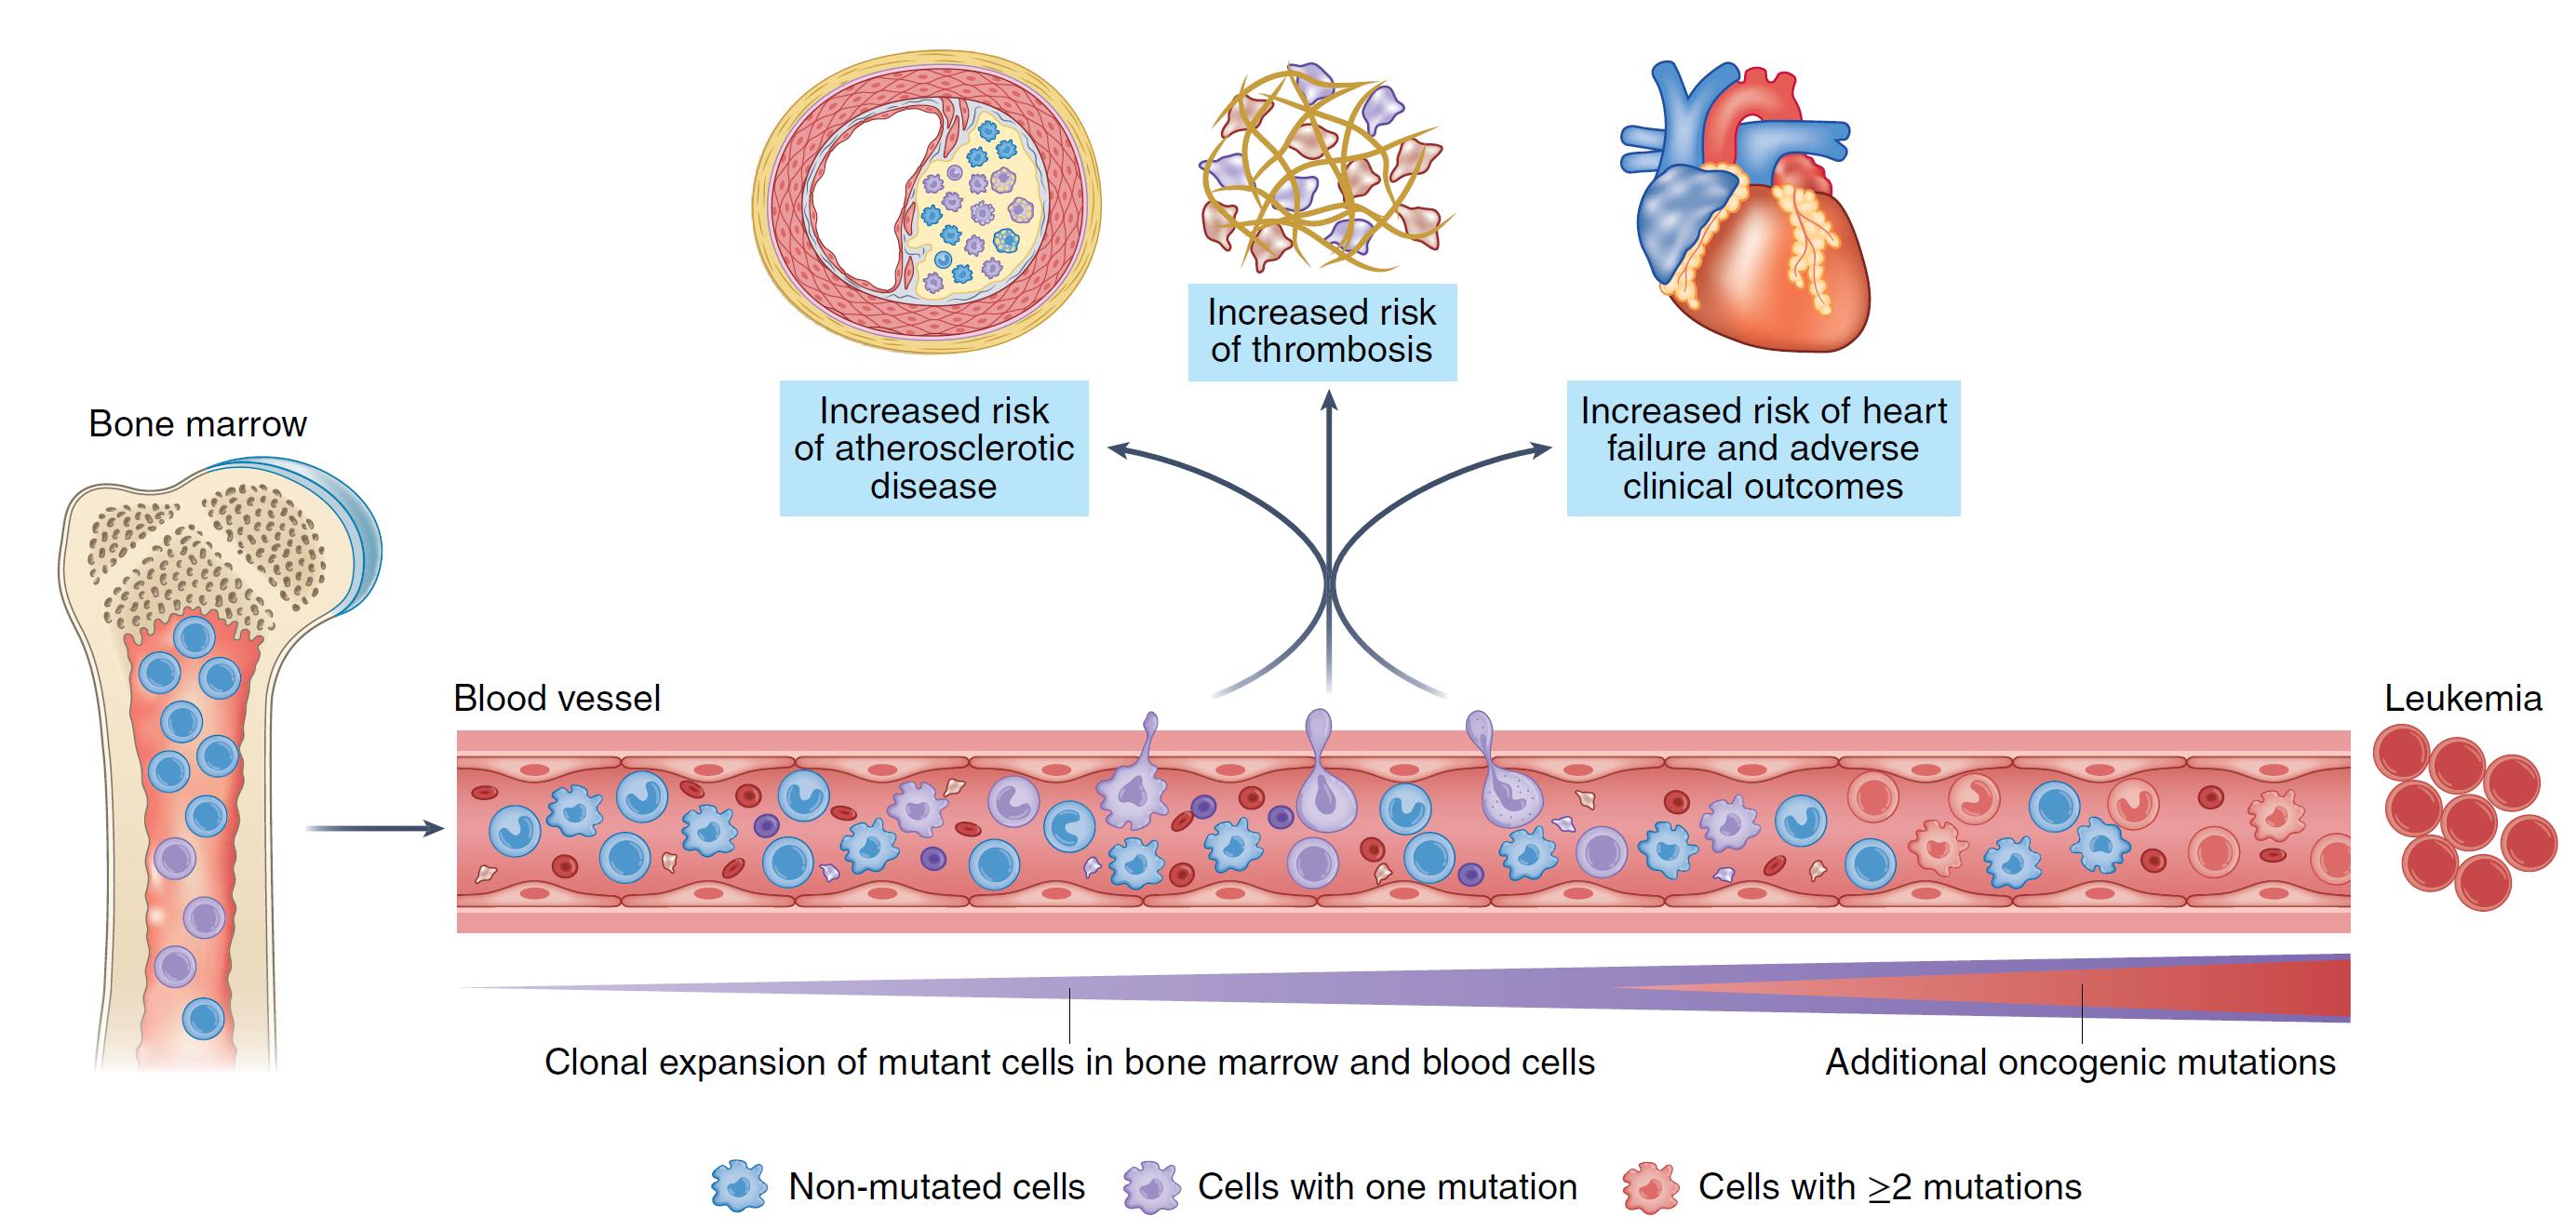 Mutaciones en células sanguíneas contribuyen al desarrollo de enfermedad cardiovascular.